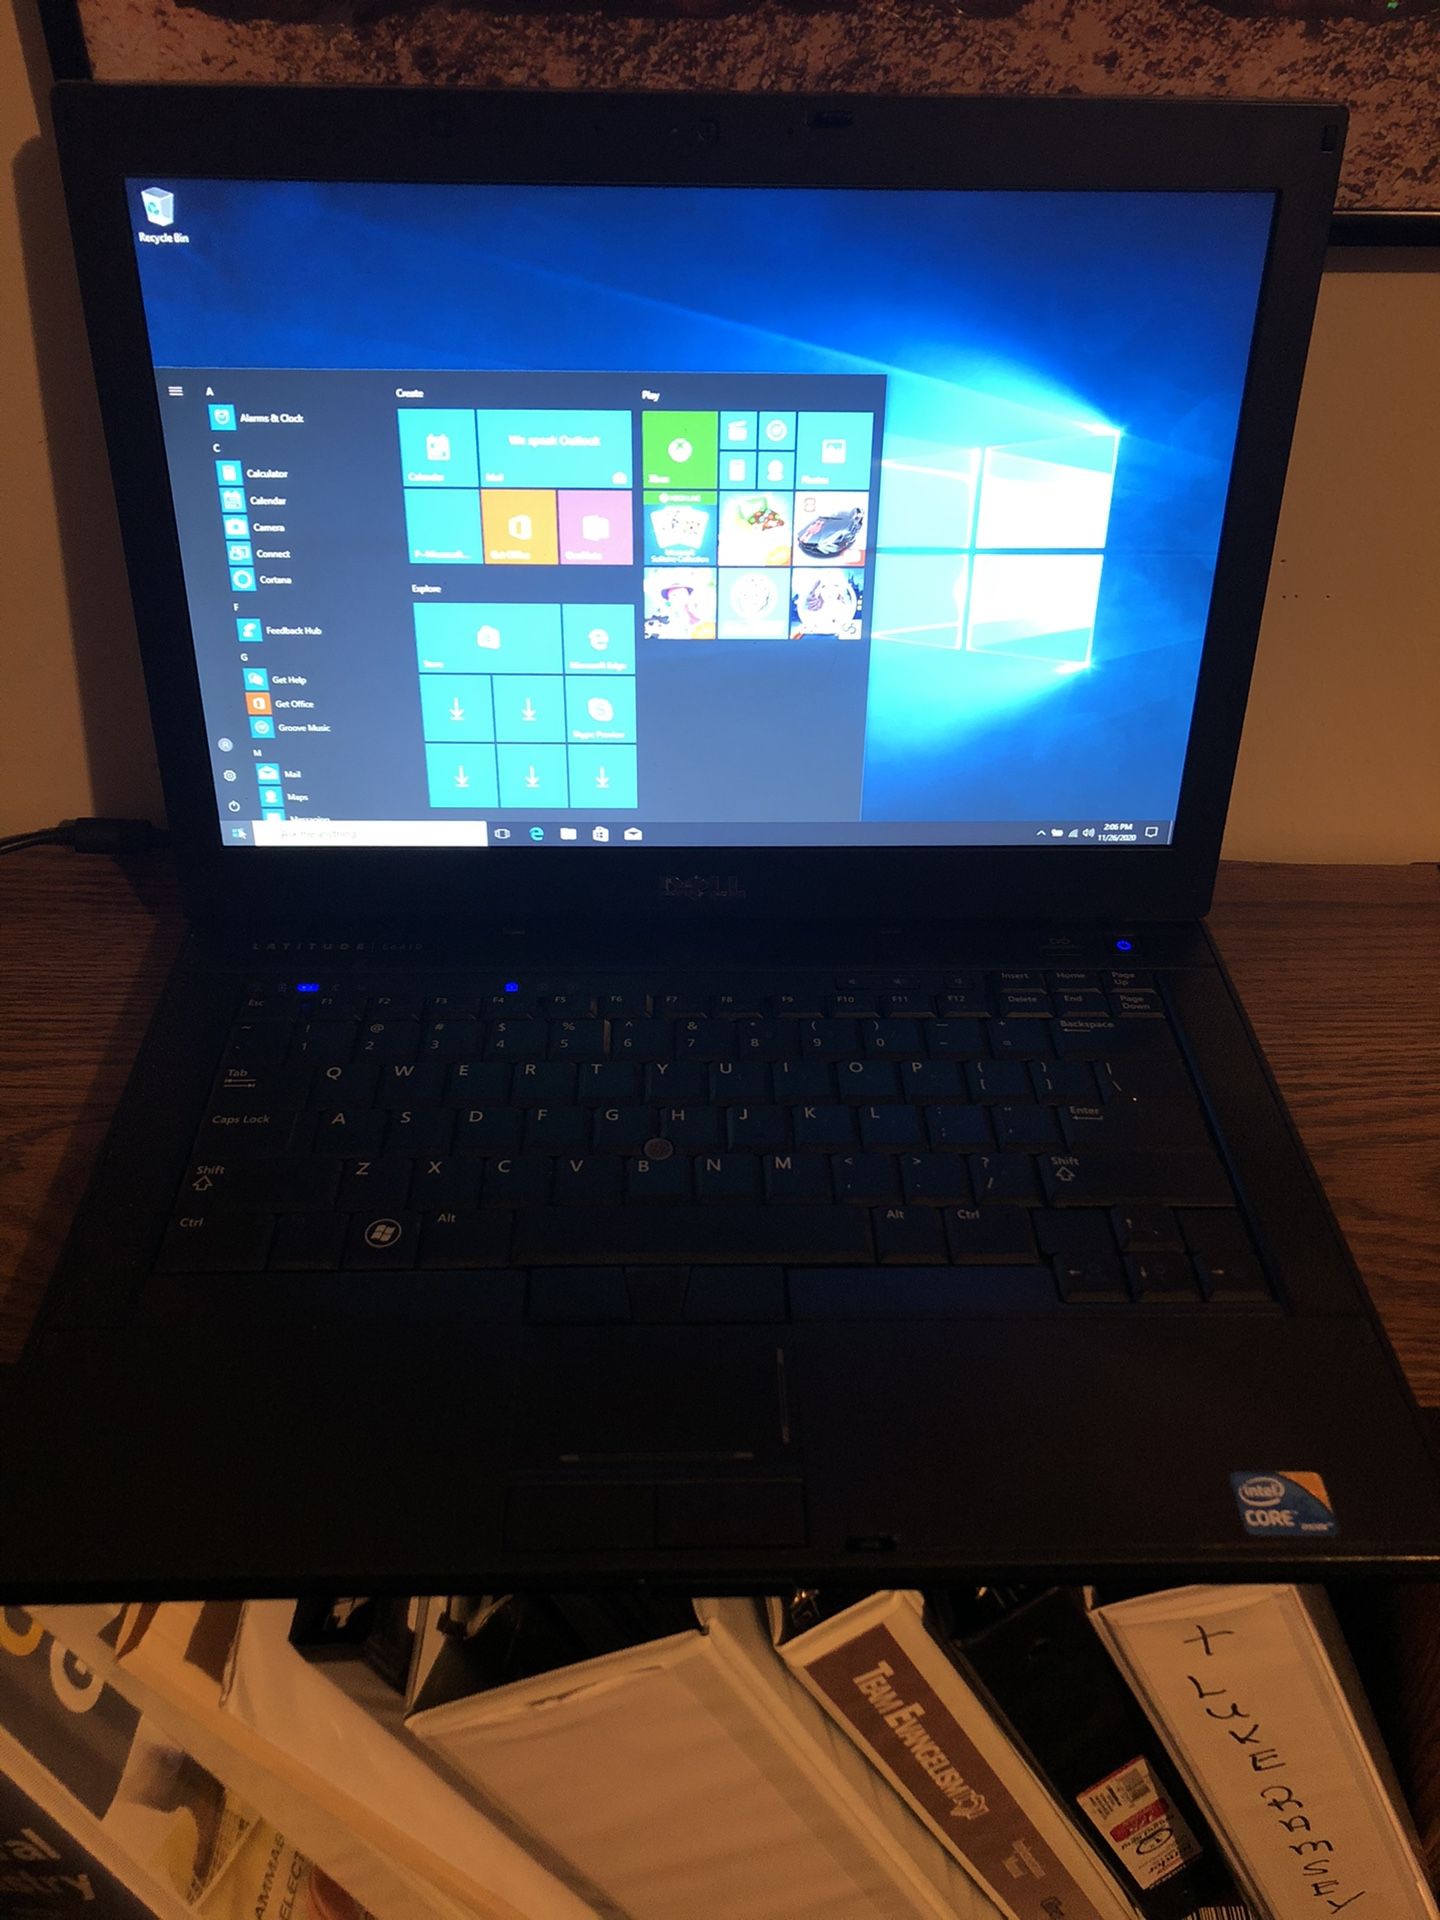 Dell Laptop Latitude E 6410 With Windows 10